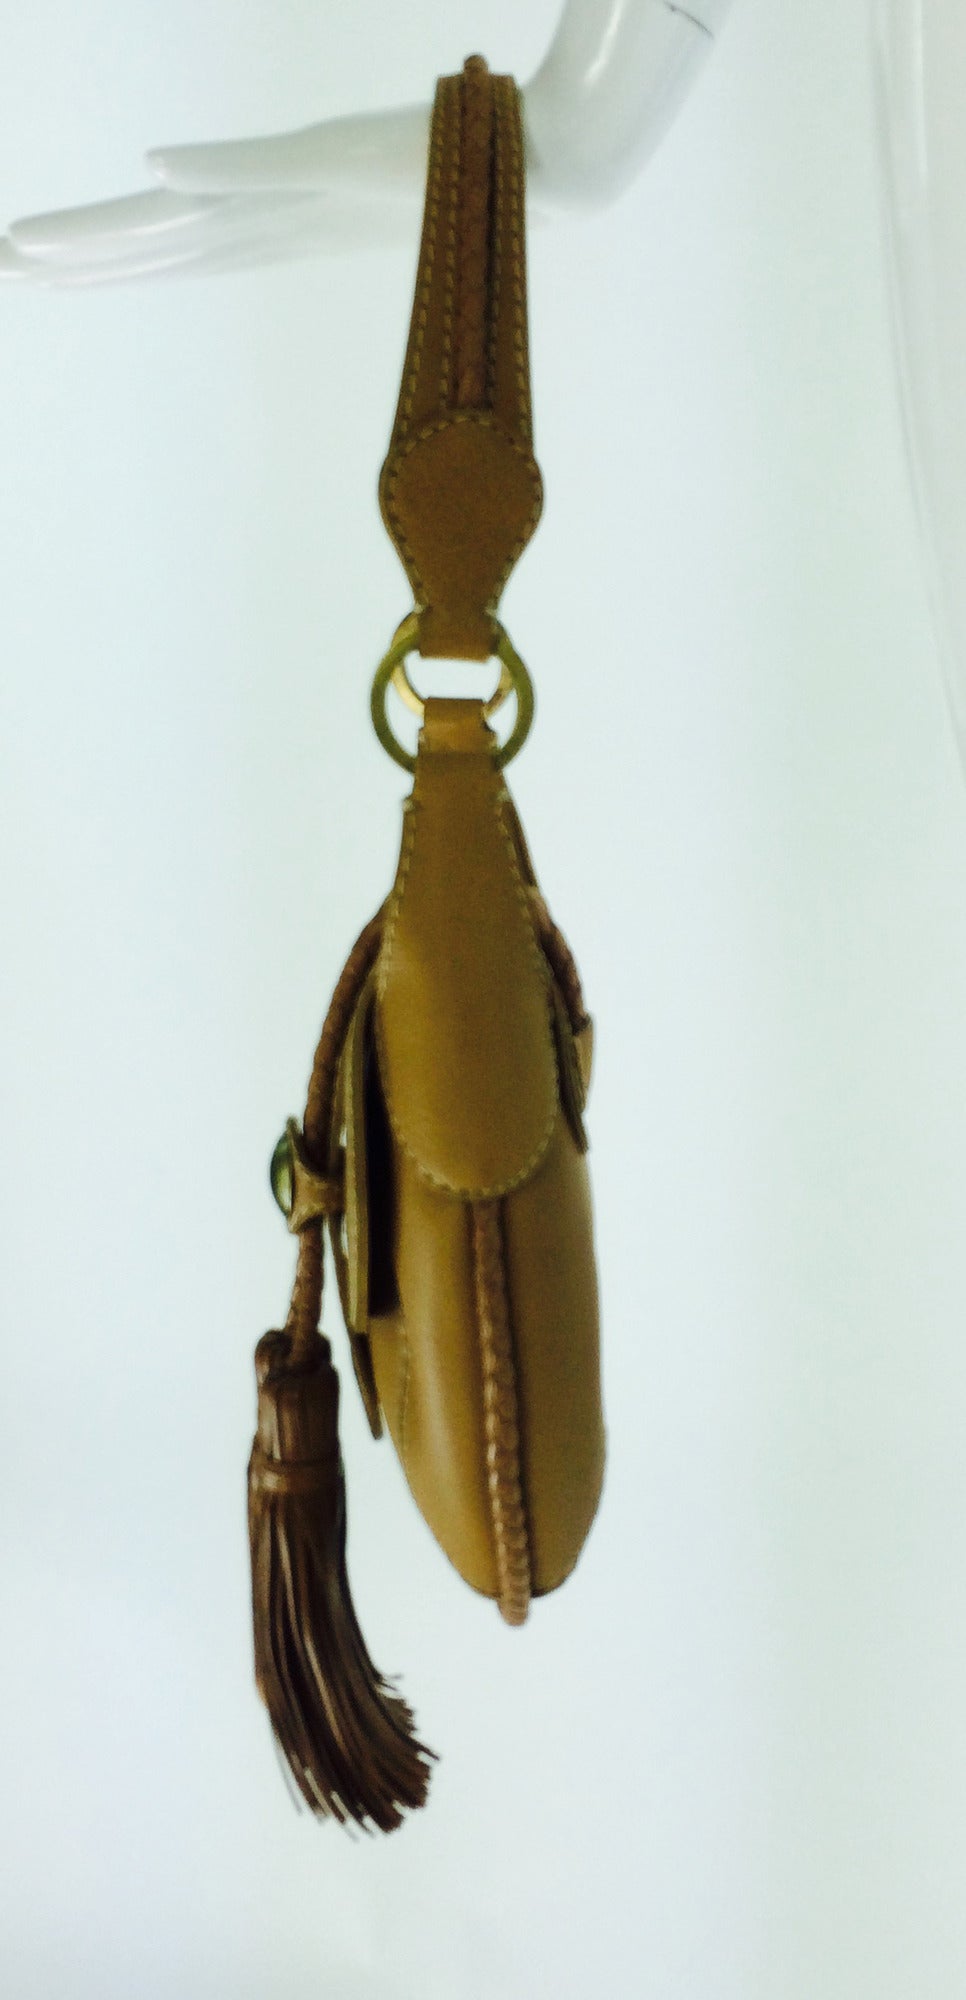 Women's A. Testoni fringe tassel shoulder bag in caramel leather